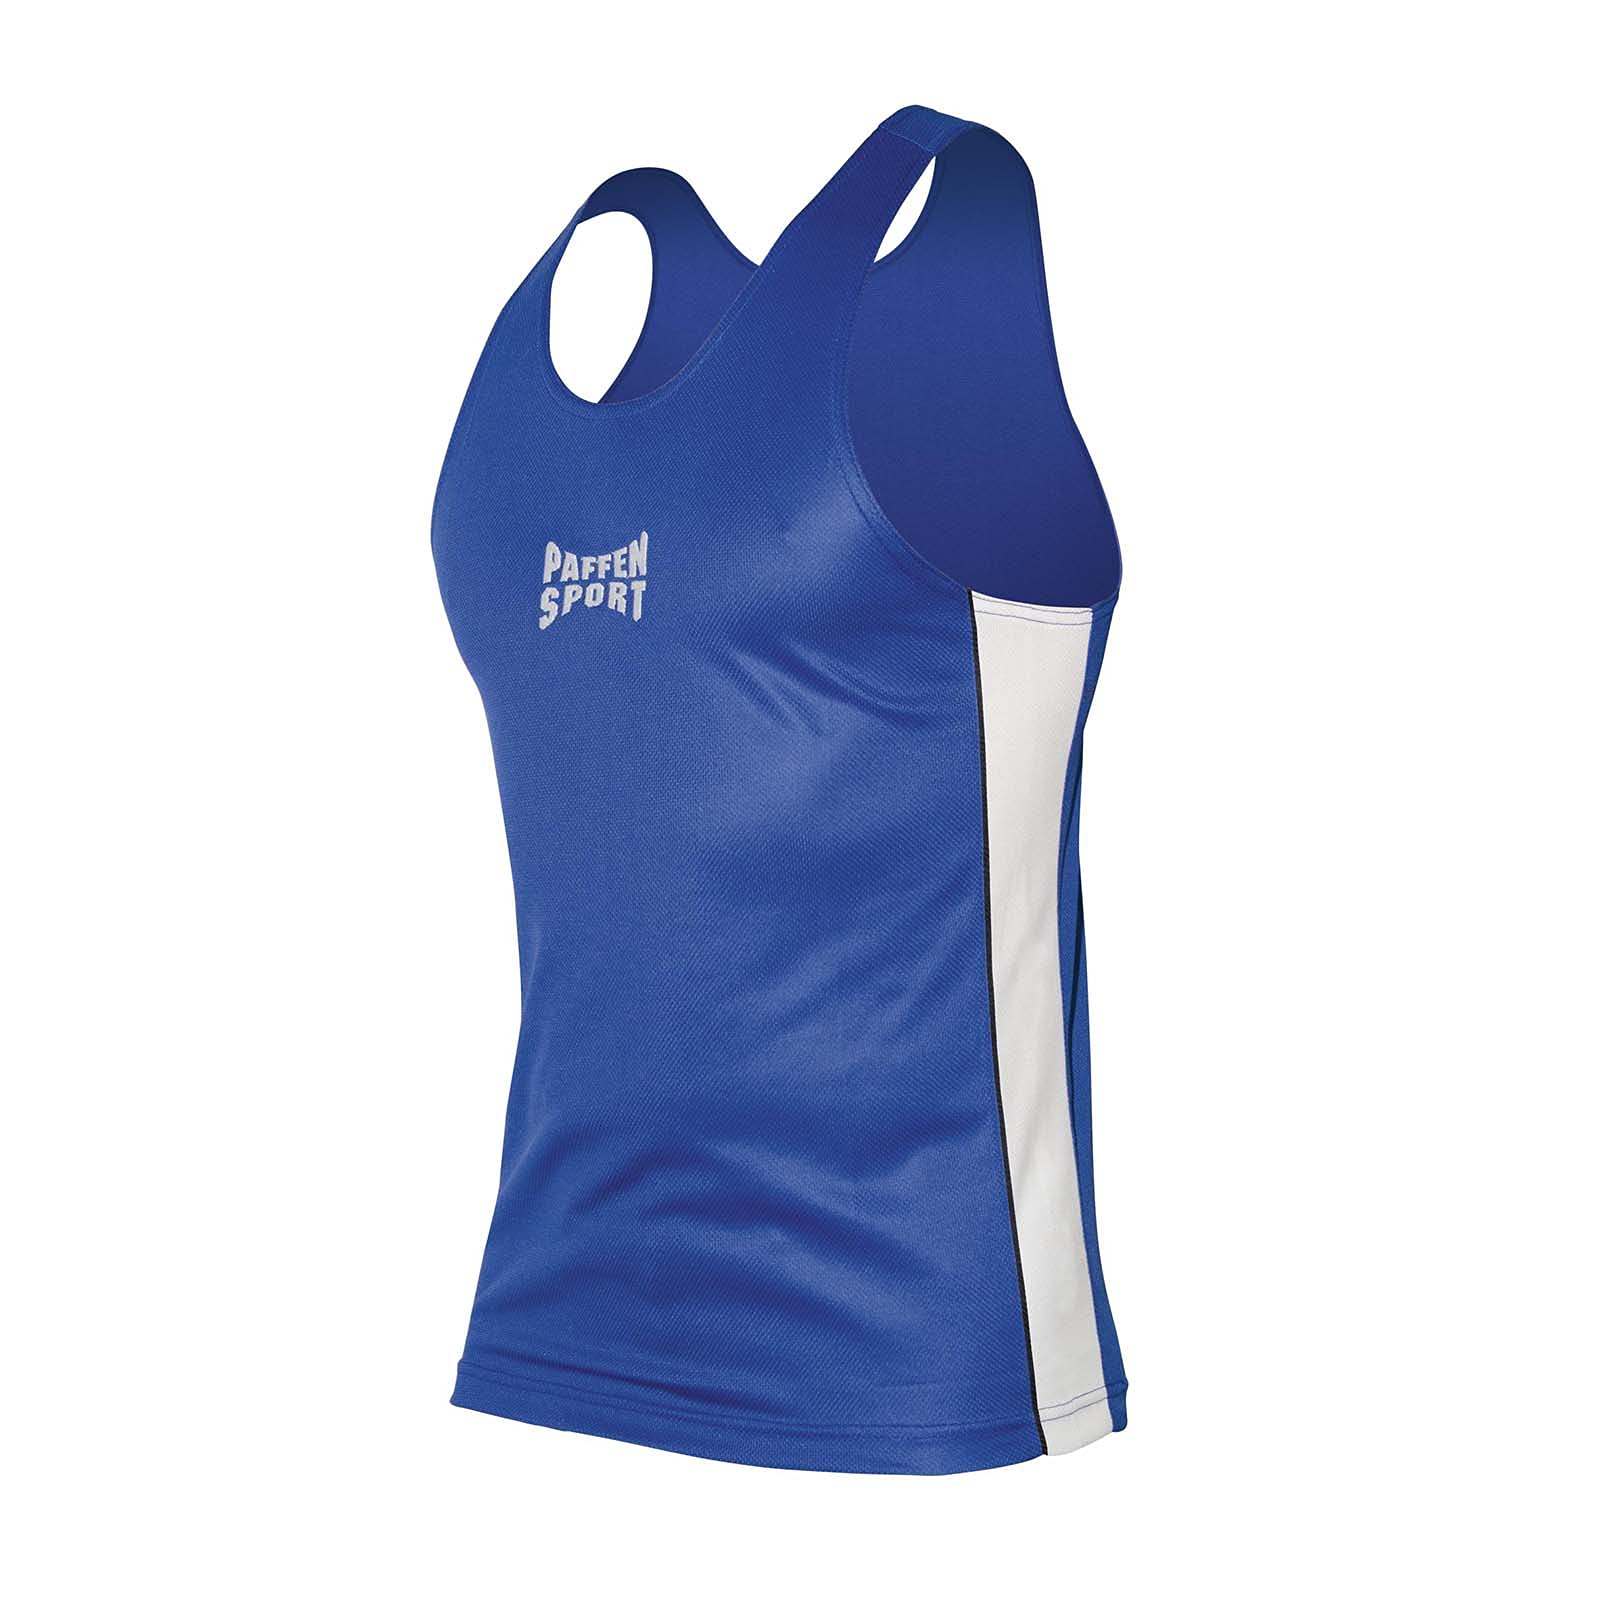 PAFFEN SPORT Contest Boxerhemd; blau/weiß; GR: XS